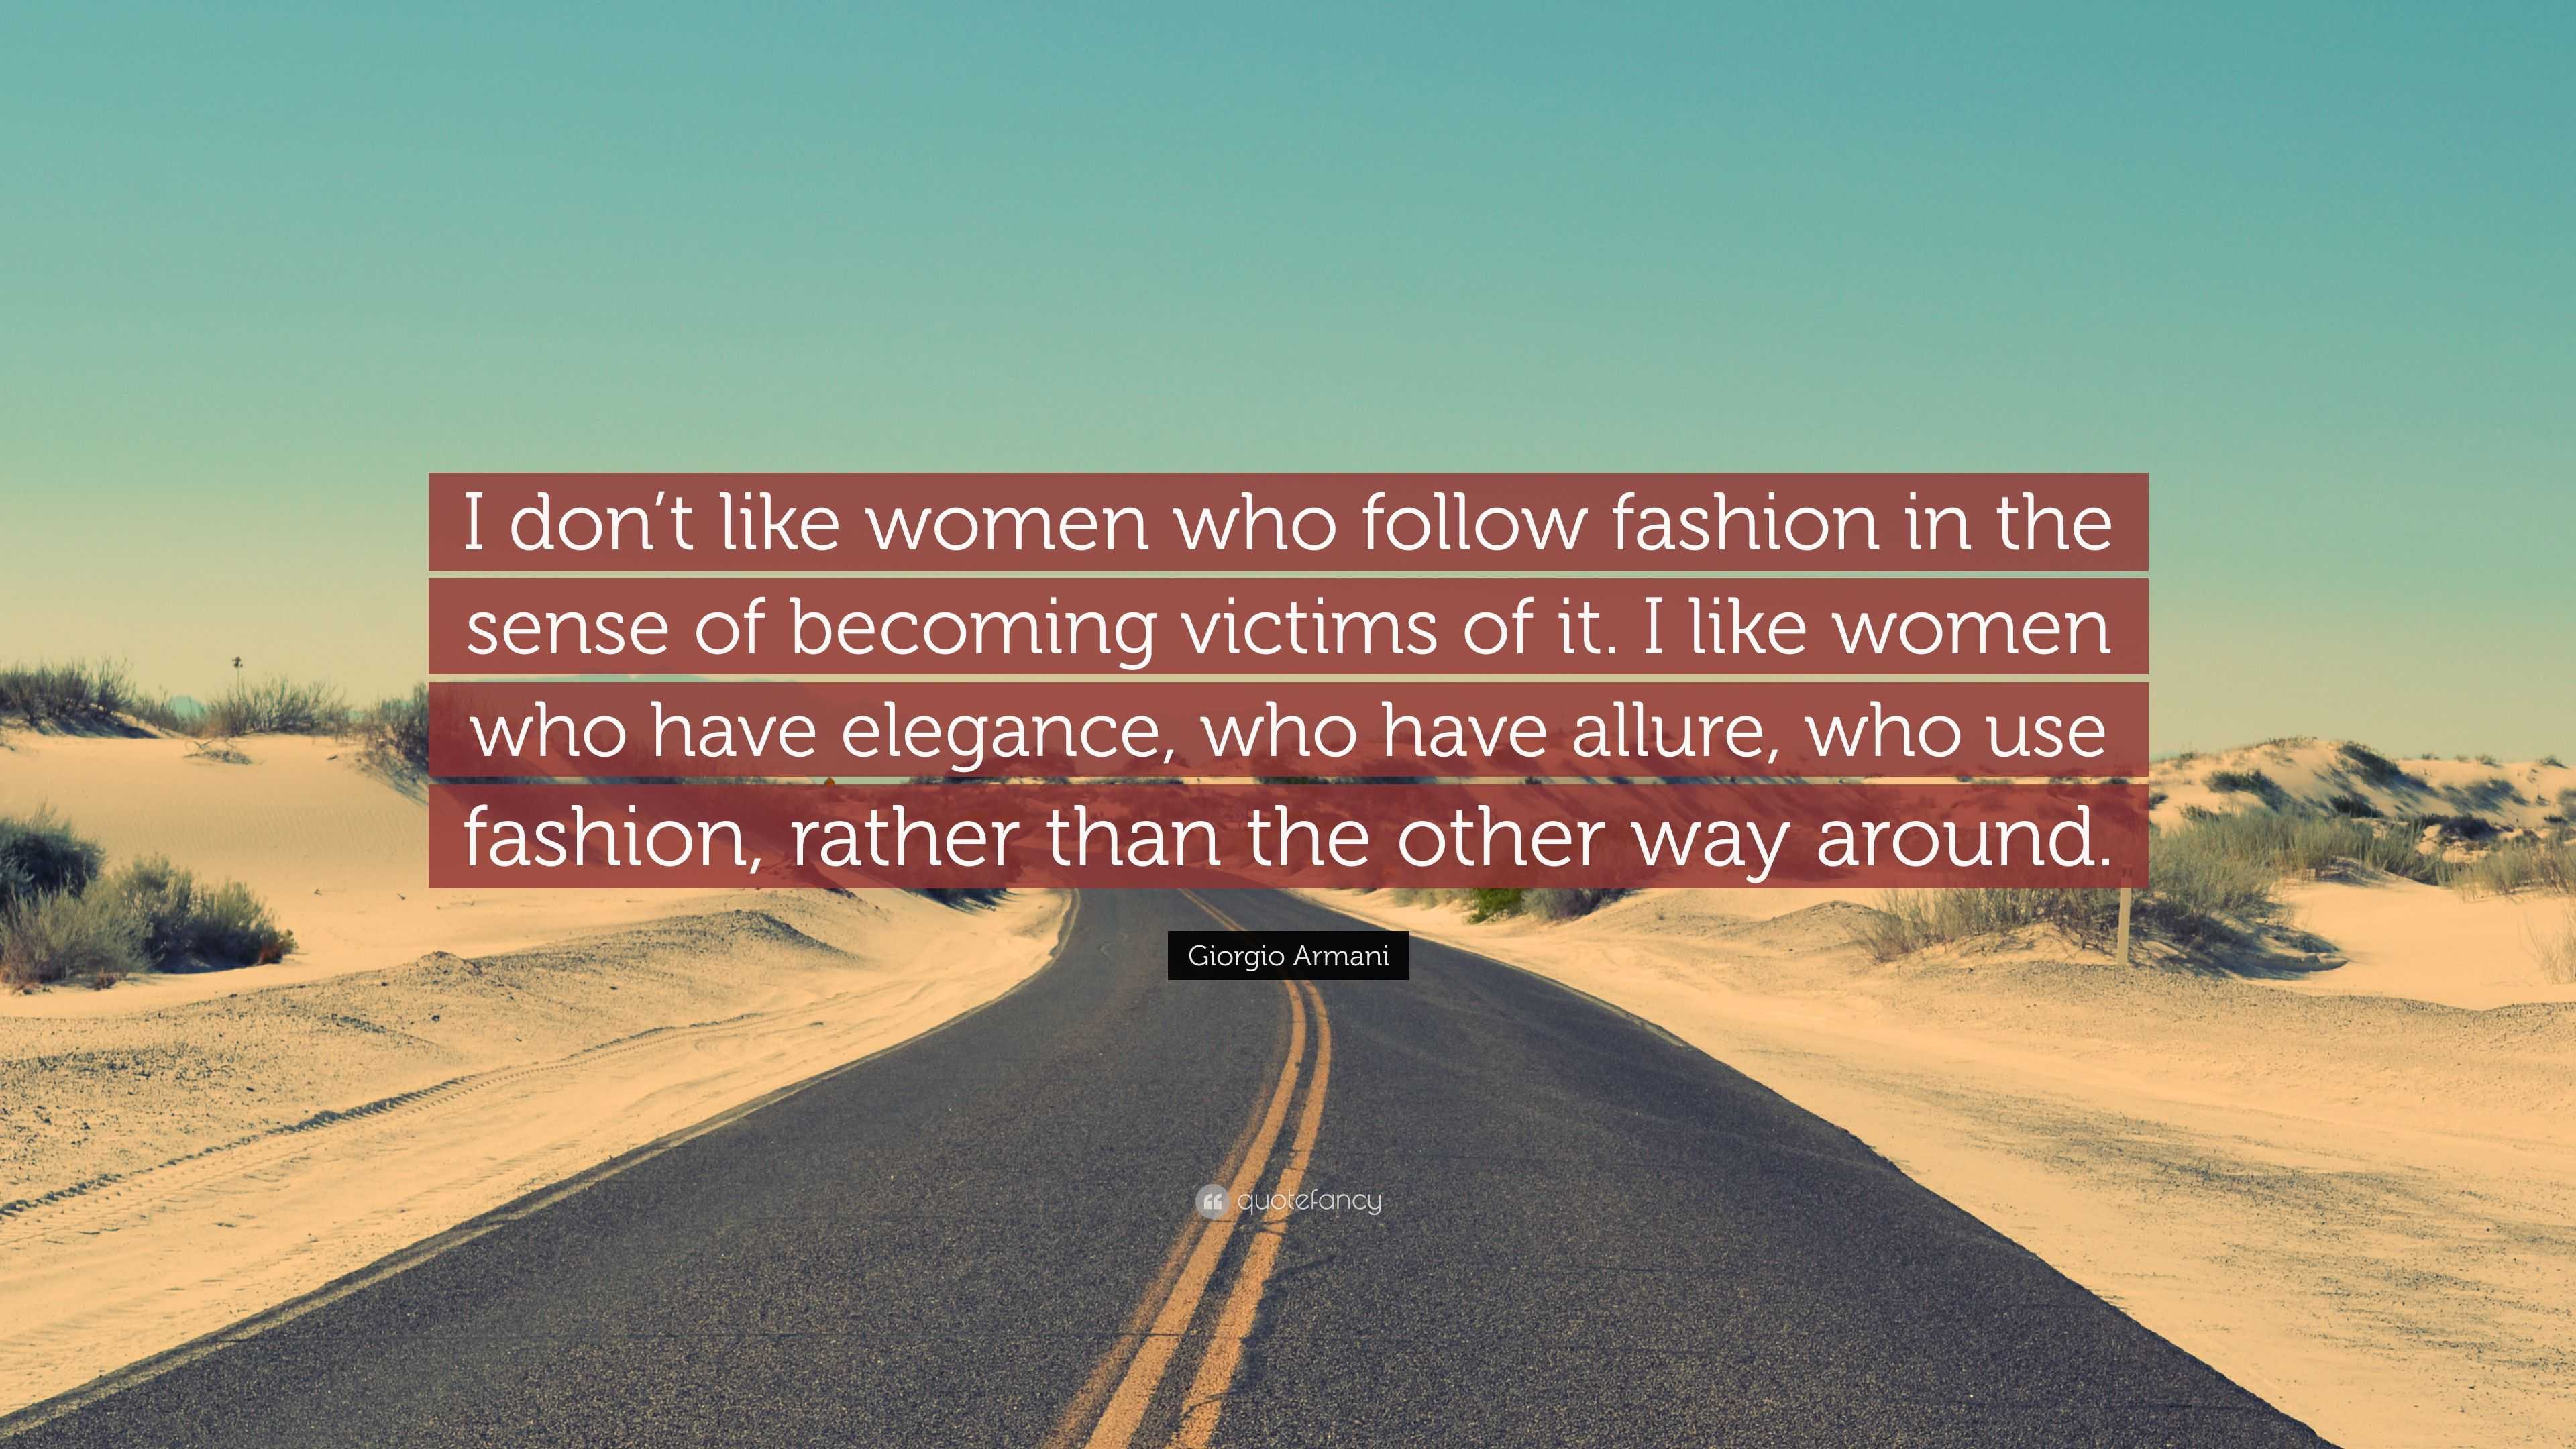 Giorgio Armani Quote: “I don’t like women who follow fashion in the ...